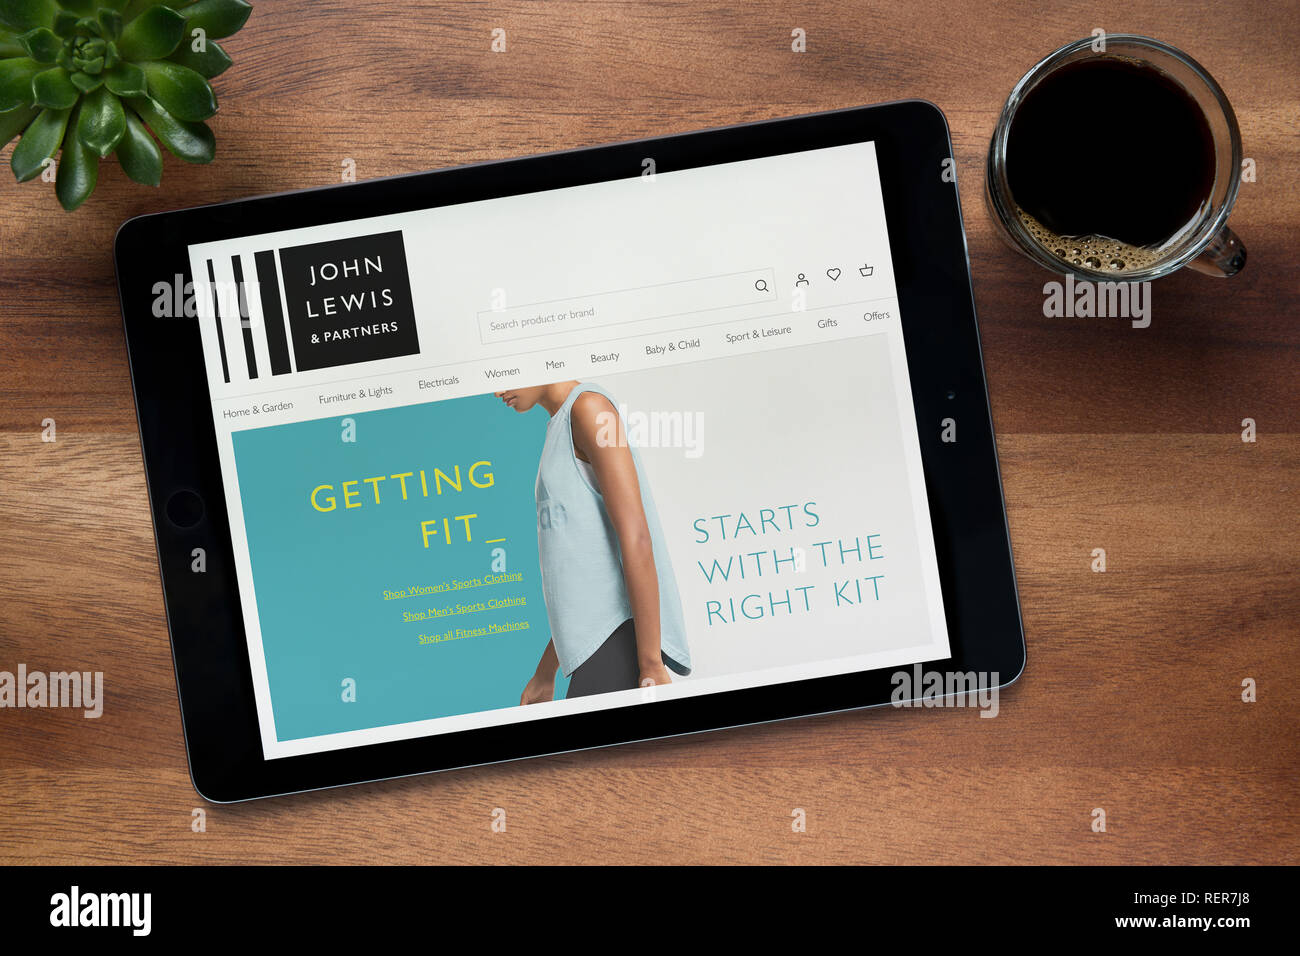 Die Website von John Lewis und Partner auf einem iPad Tablet gesehen wird, auf einen hölzernen Tisch zusammen mit einem Espresso und einem Haus Anlage (nur redaktionell) Stockfoto